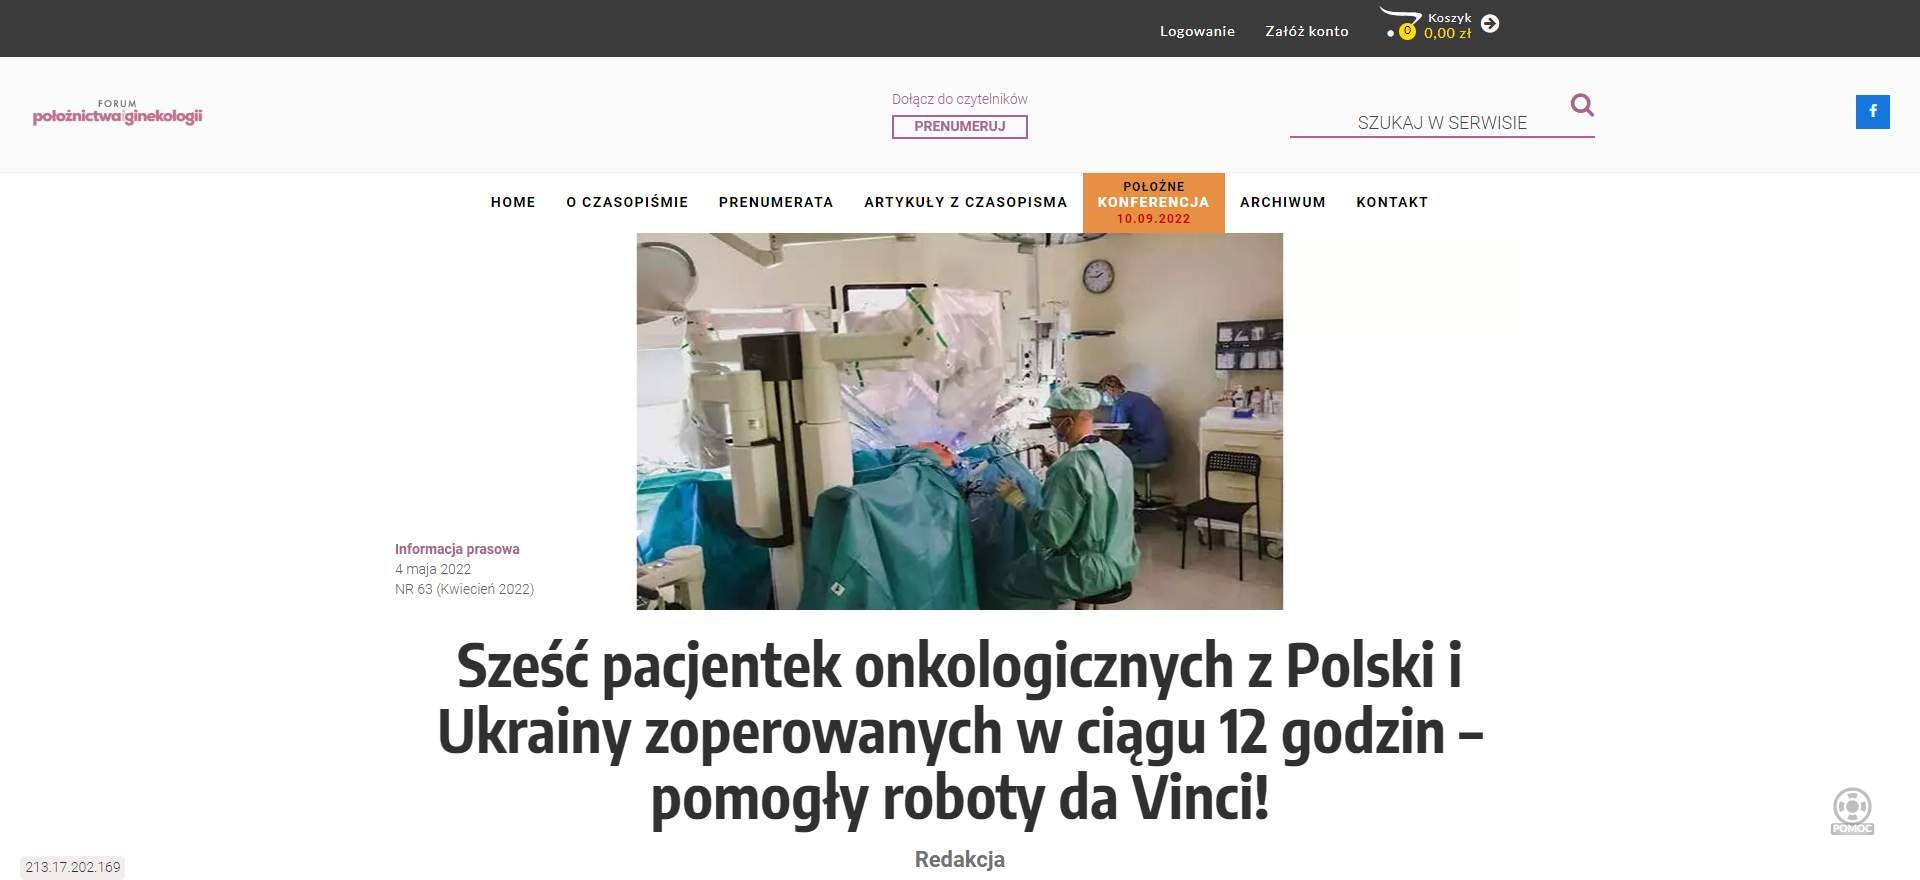 szesc pacjentek onkologicznych z polski i ukrainy zoperowanych w ciagu godzin pomogly roboty da vinci